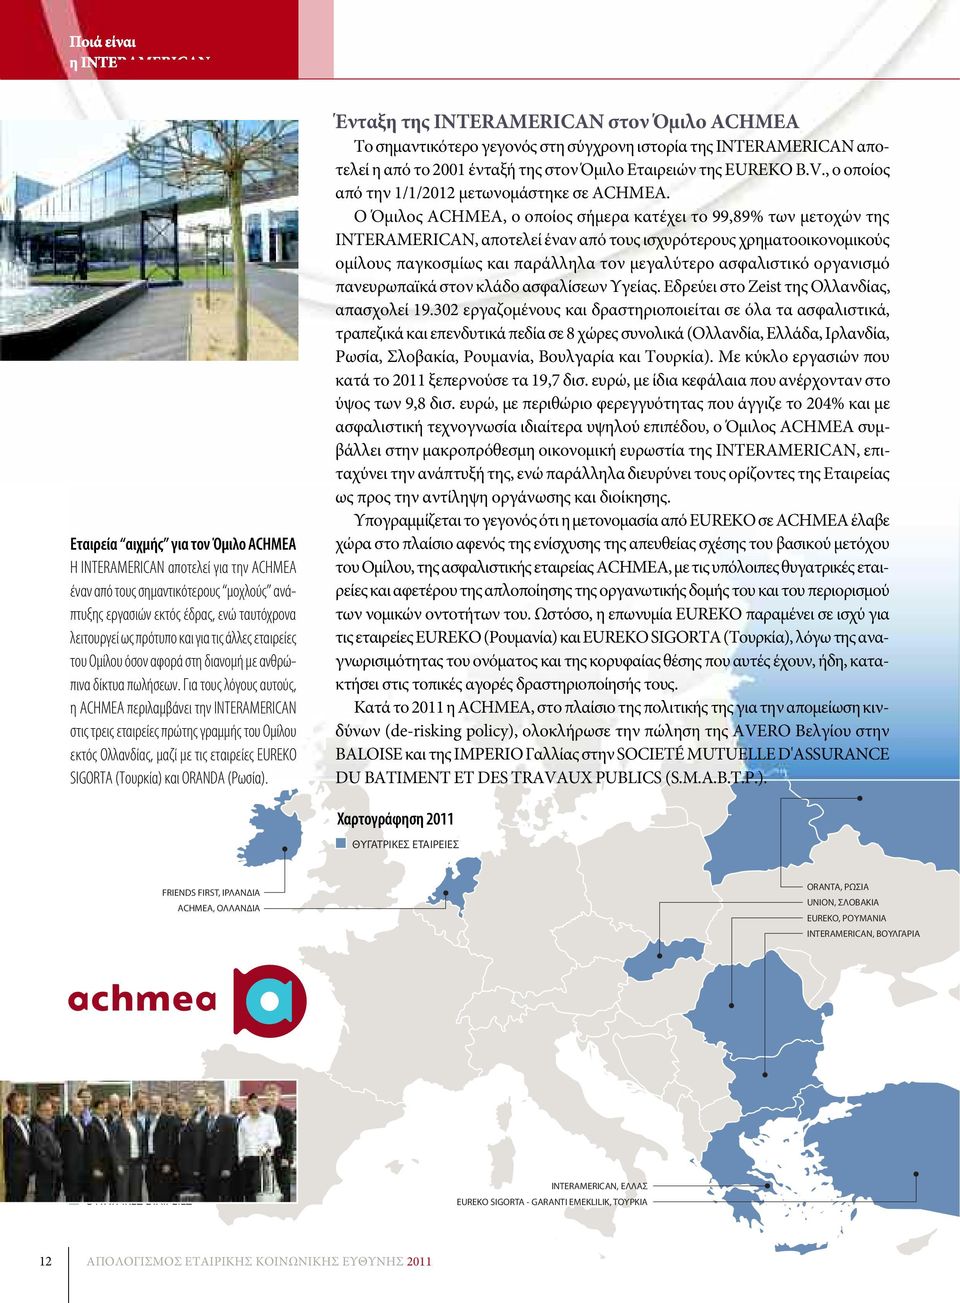 Για τους λόγους αυτούς, η ACHMEA περιλαμβάνει την INTERAMERICAN στις τρεις εταιρείες πρώτης γραμμής του Ομίλου εκτός Ολλανδίας, μαζί με τις εταιρείες EUREKO SIGORTA (Τουρκία) και ORANDA (Ρωσία).